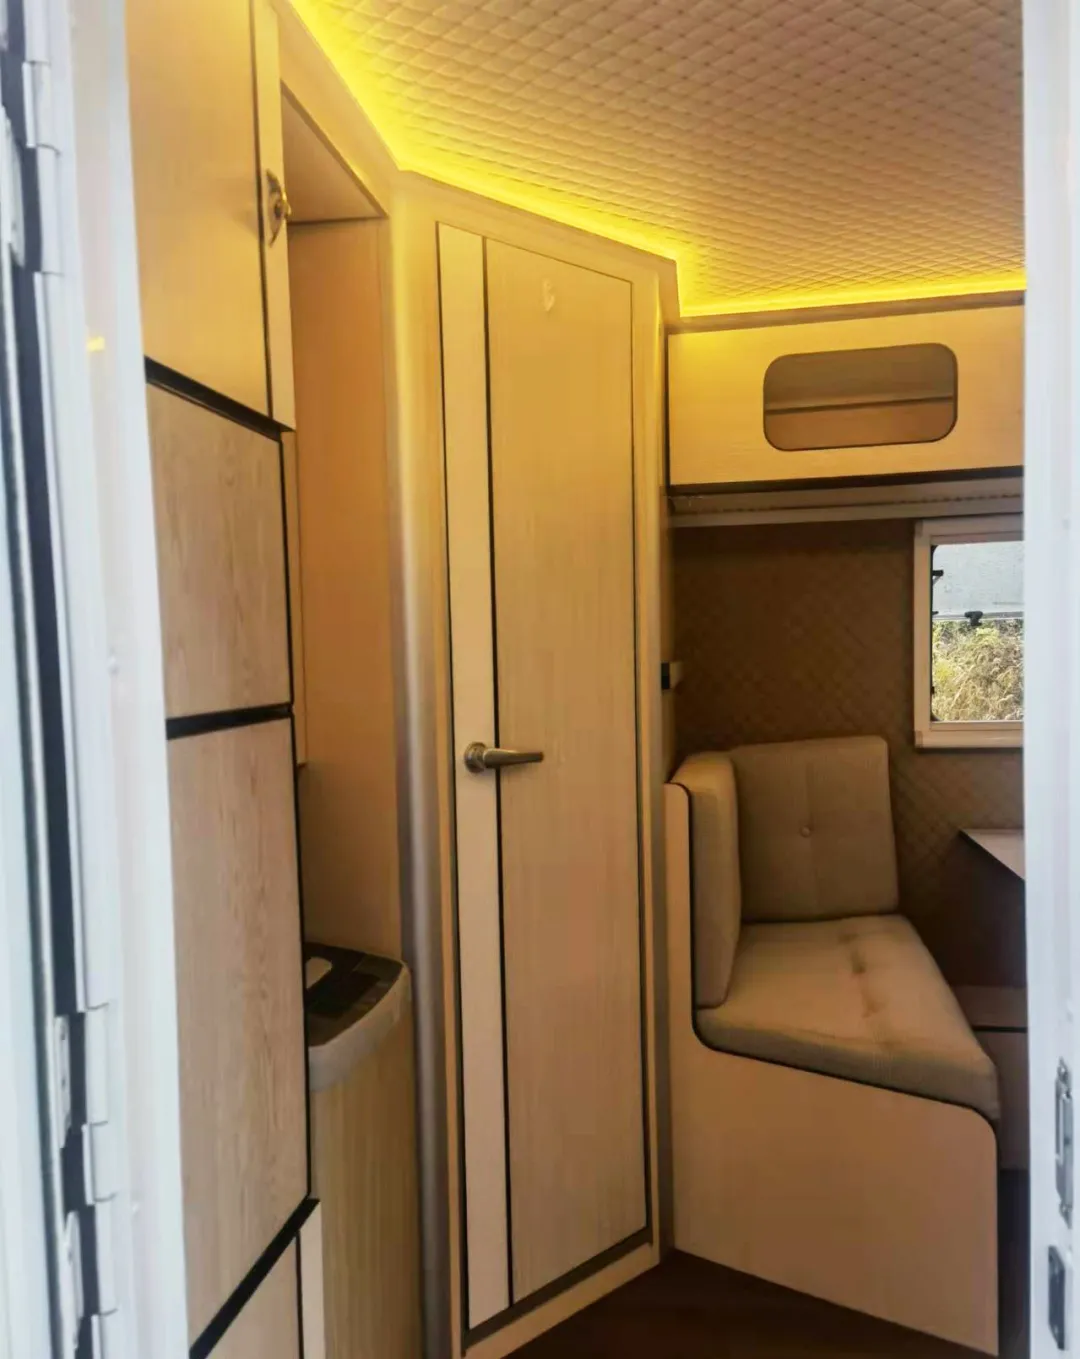 汇斯诚530T拖挂房车 材质升级 多功能吊柜可储物可变床 智能生活